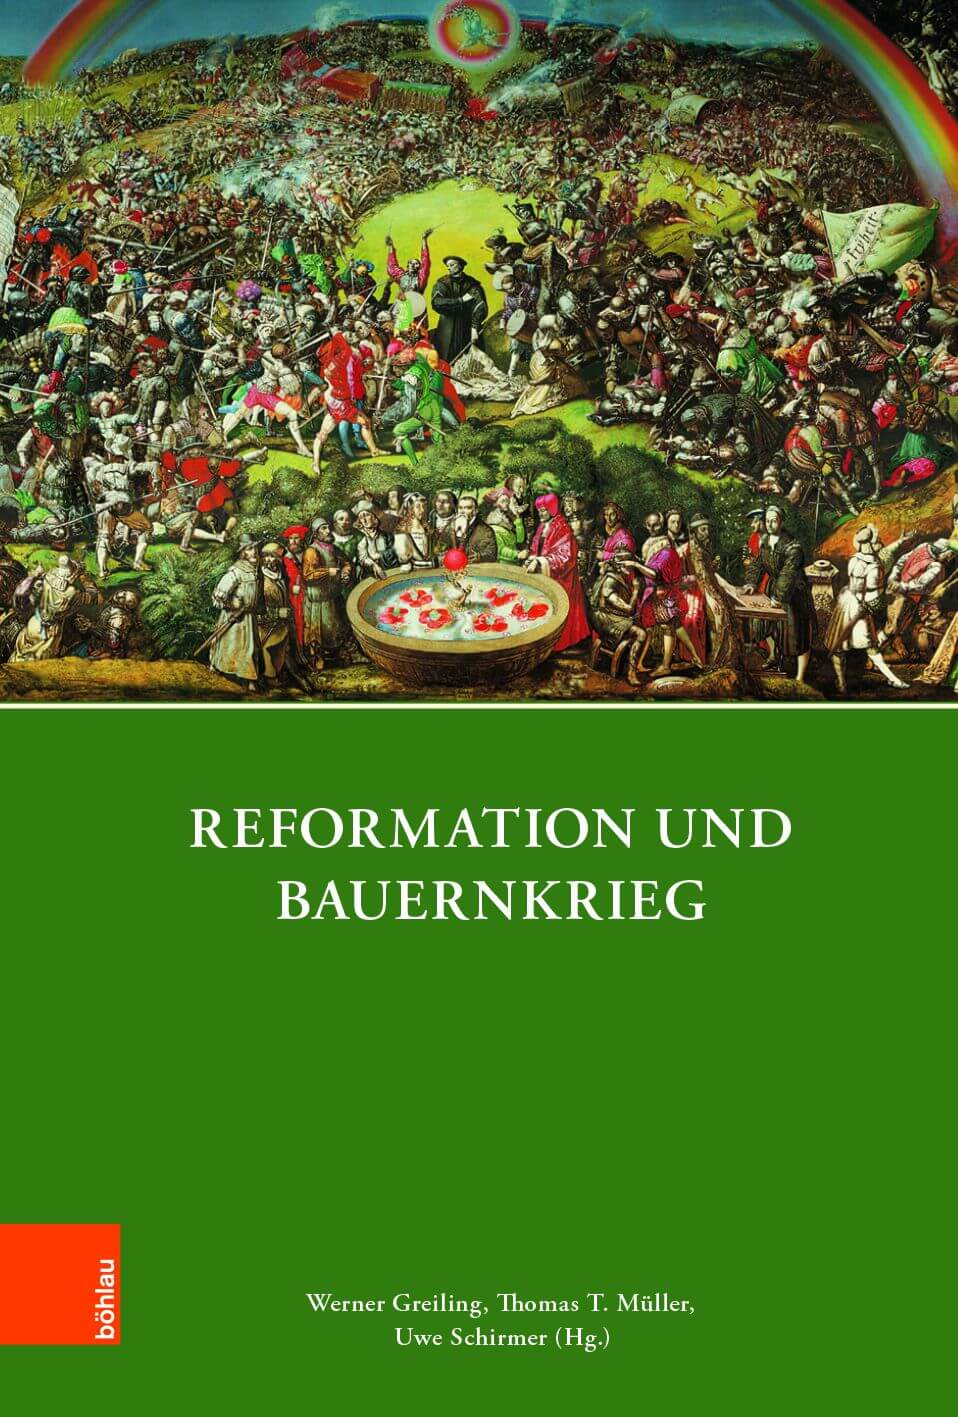 buch_reformation_und_bauernkrieg_greiling_mueller_schirmer_cover.jpg